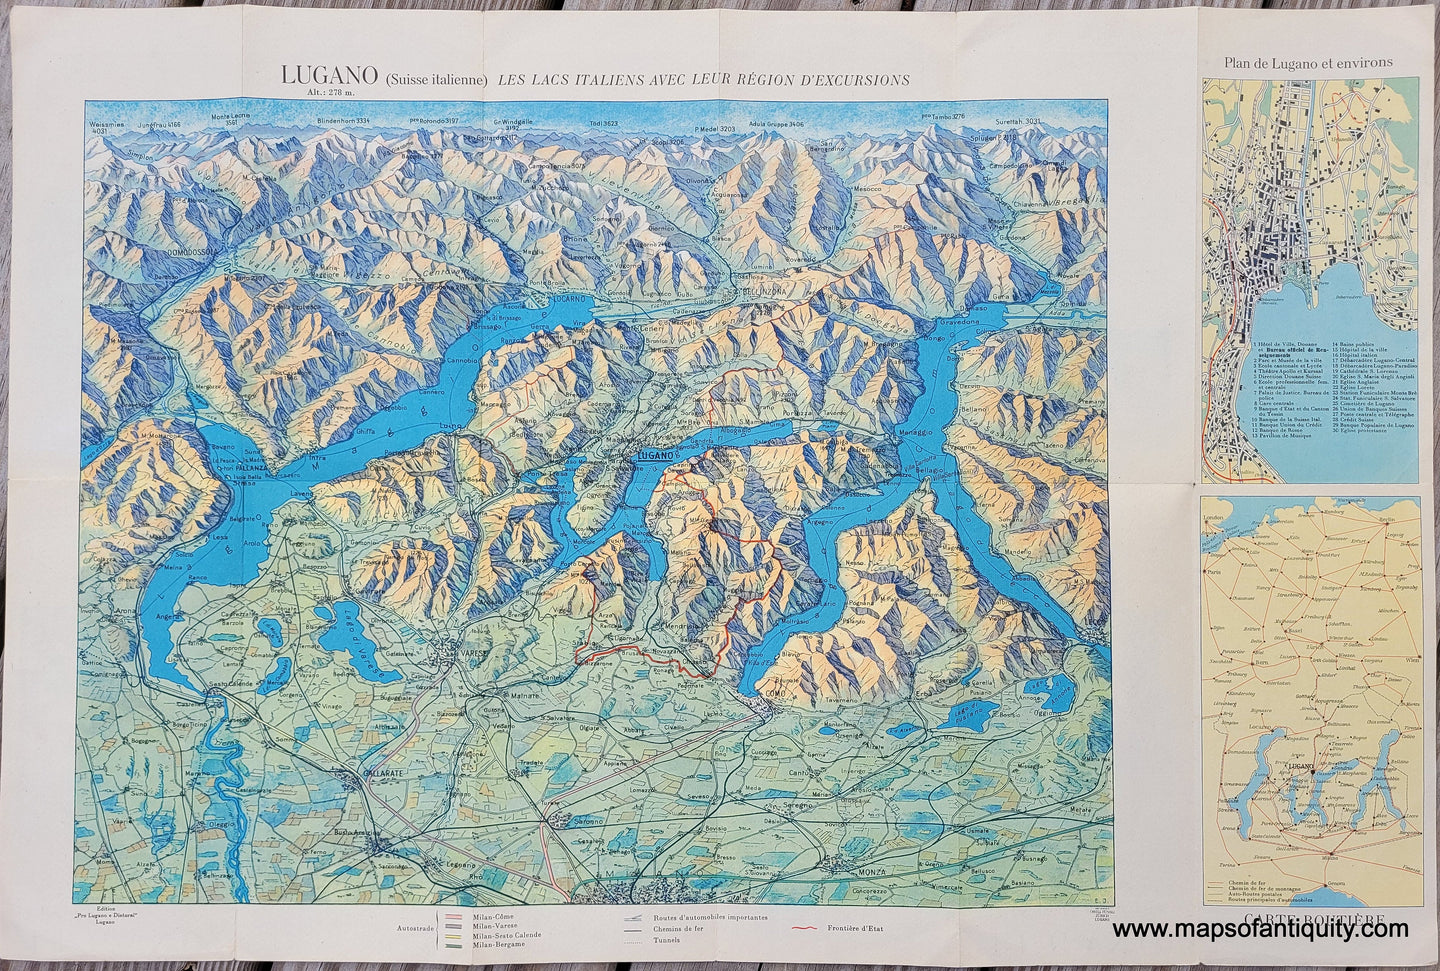 Genuine-Antique-Map-Lugano-Suisse-italienne-Les-Lacs-Italiens-avec-Leur-Region-dExcursions-Italy-and-Switzerland--1920s-Orell-Fussli-Maps-Of-Antiquity